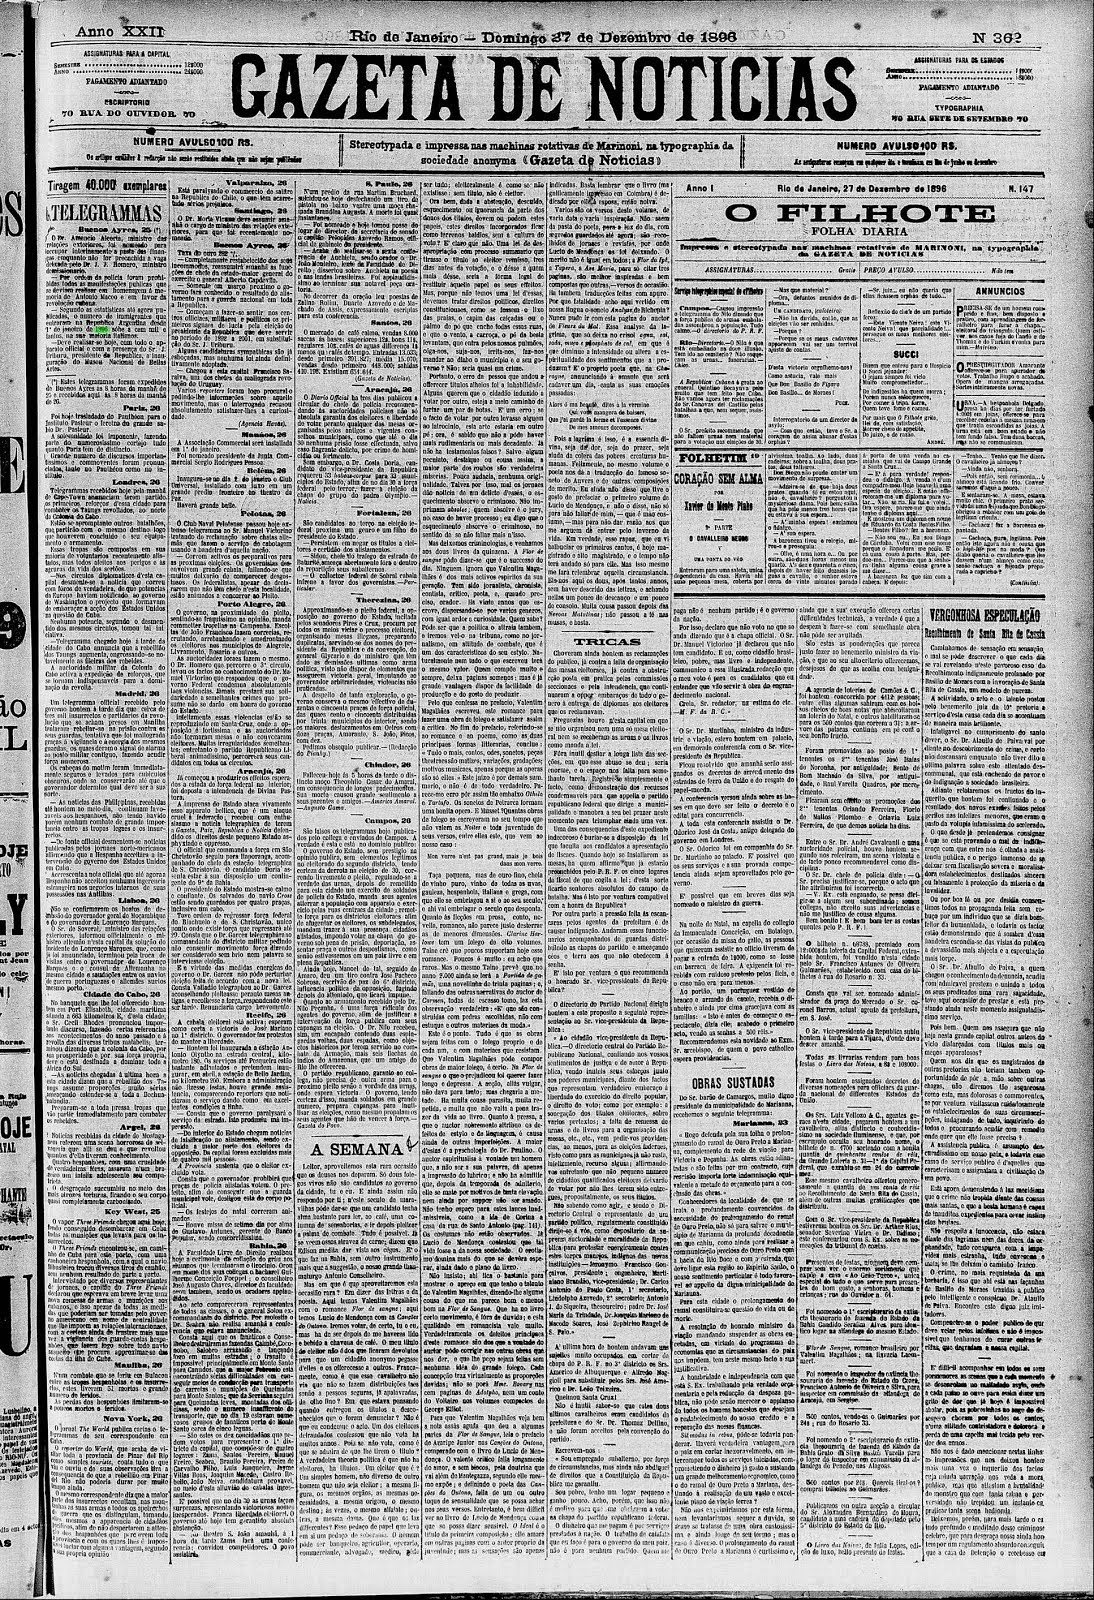 crônica de Machado de Assis  27.12.1896 série “A Semana”, na Gazeta de Notícias